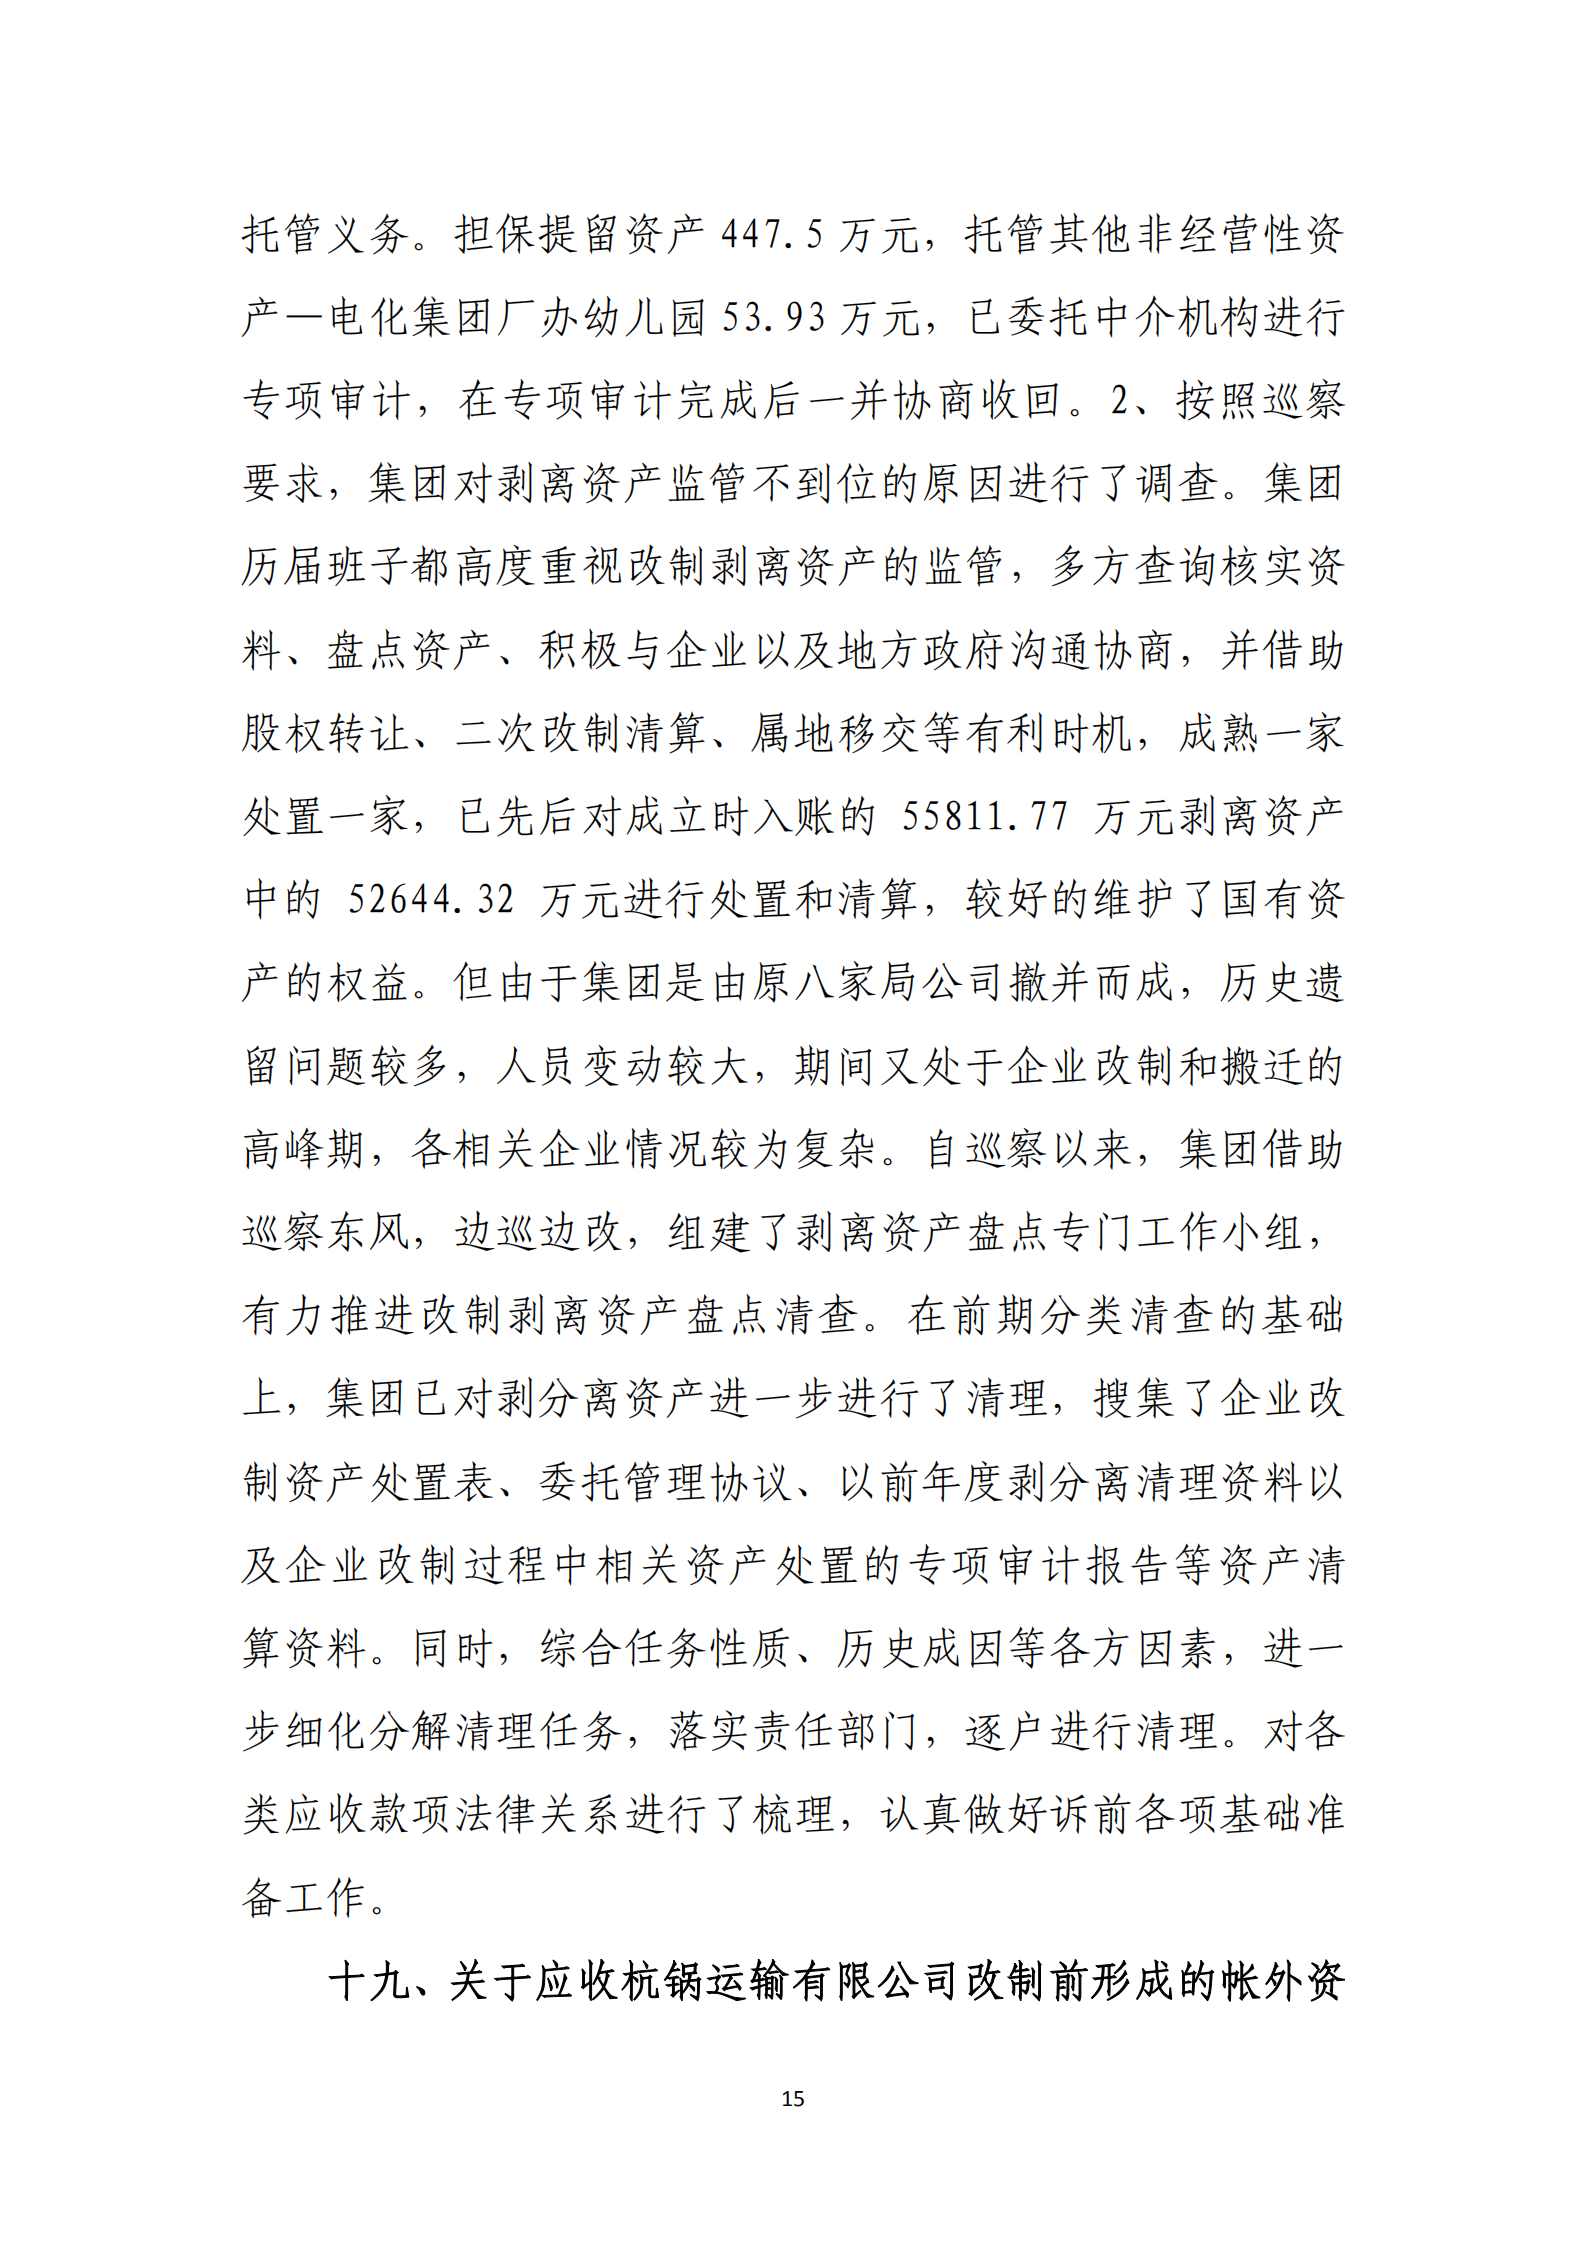 杭实集团党委关于巡察整改情况的通报_14.png